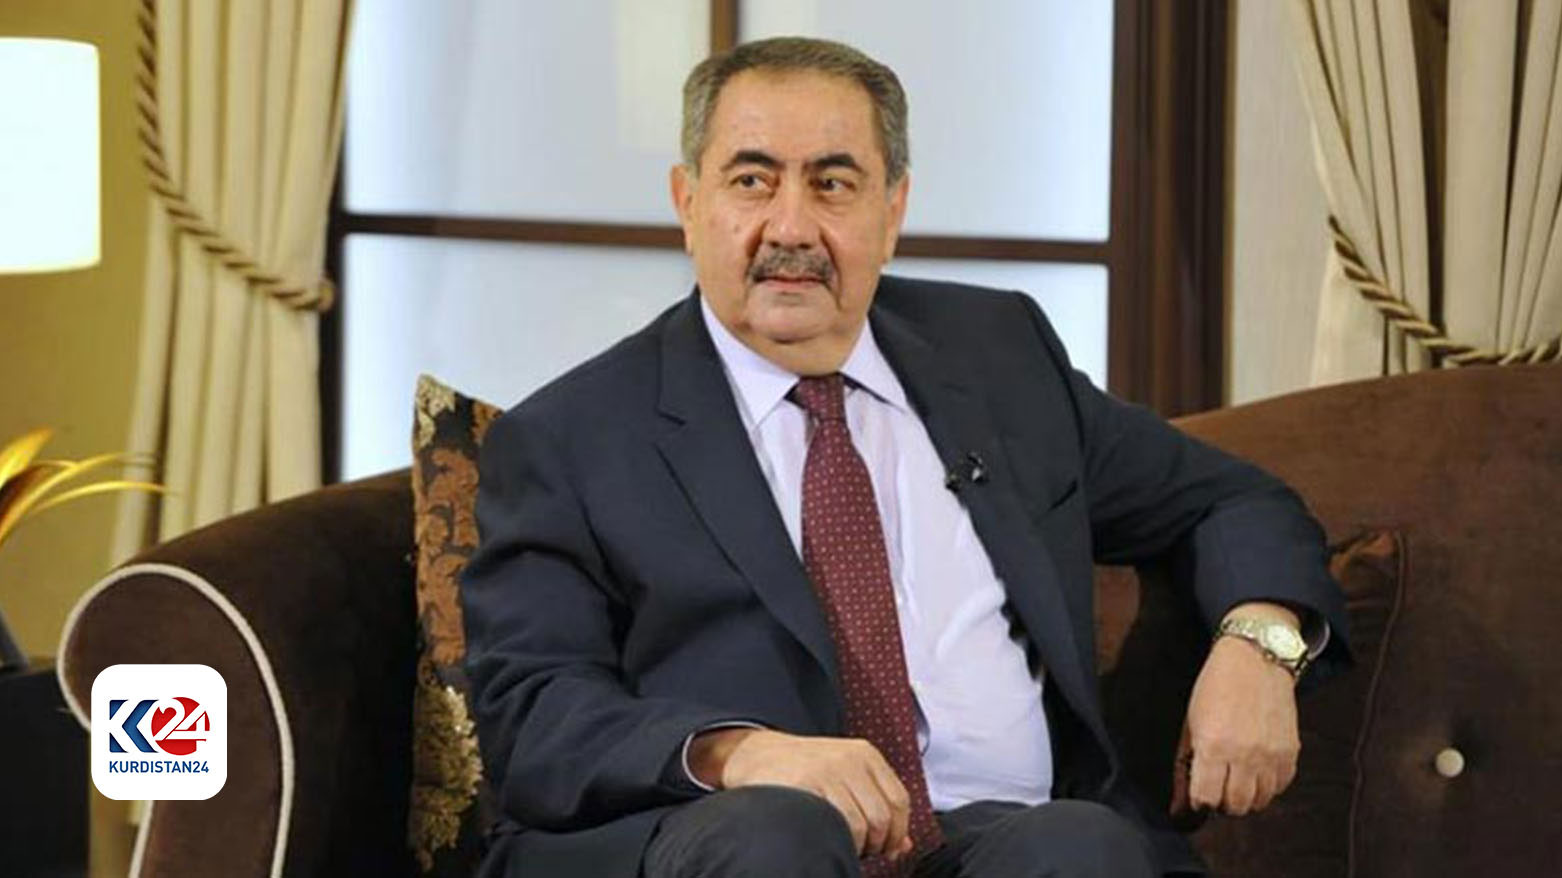 هوشیار زیباری، عضو دفتر سیاسی پارت دموکرات کوردستان